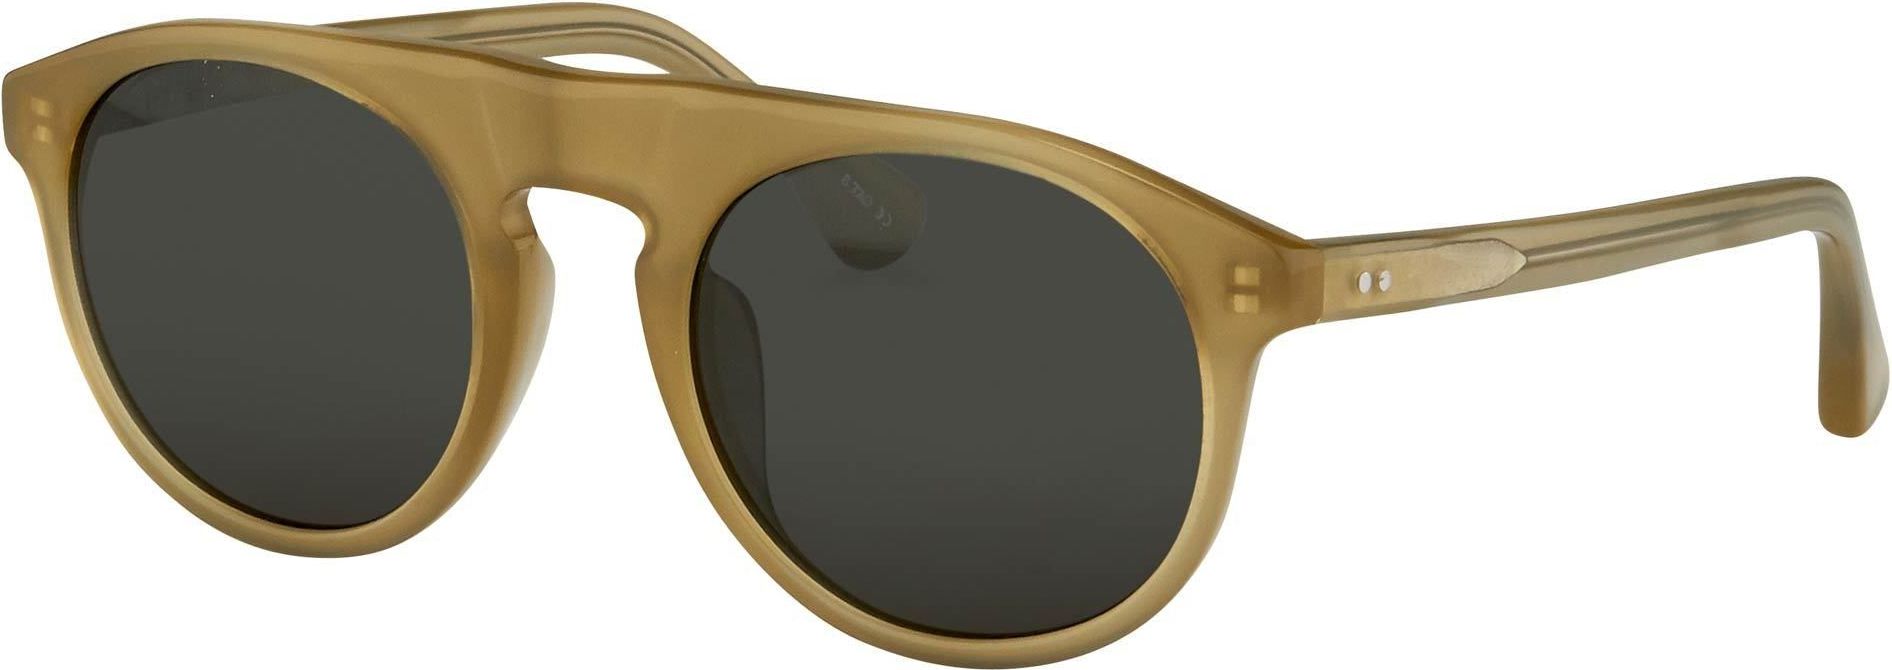 Color_DVN91C2SUN - Dries van Noten 91 C2 Flat Top Sunglasses